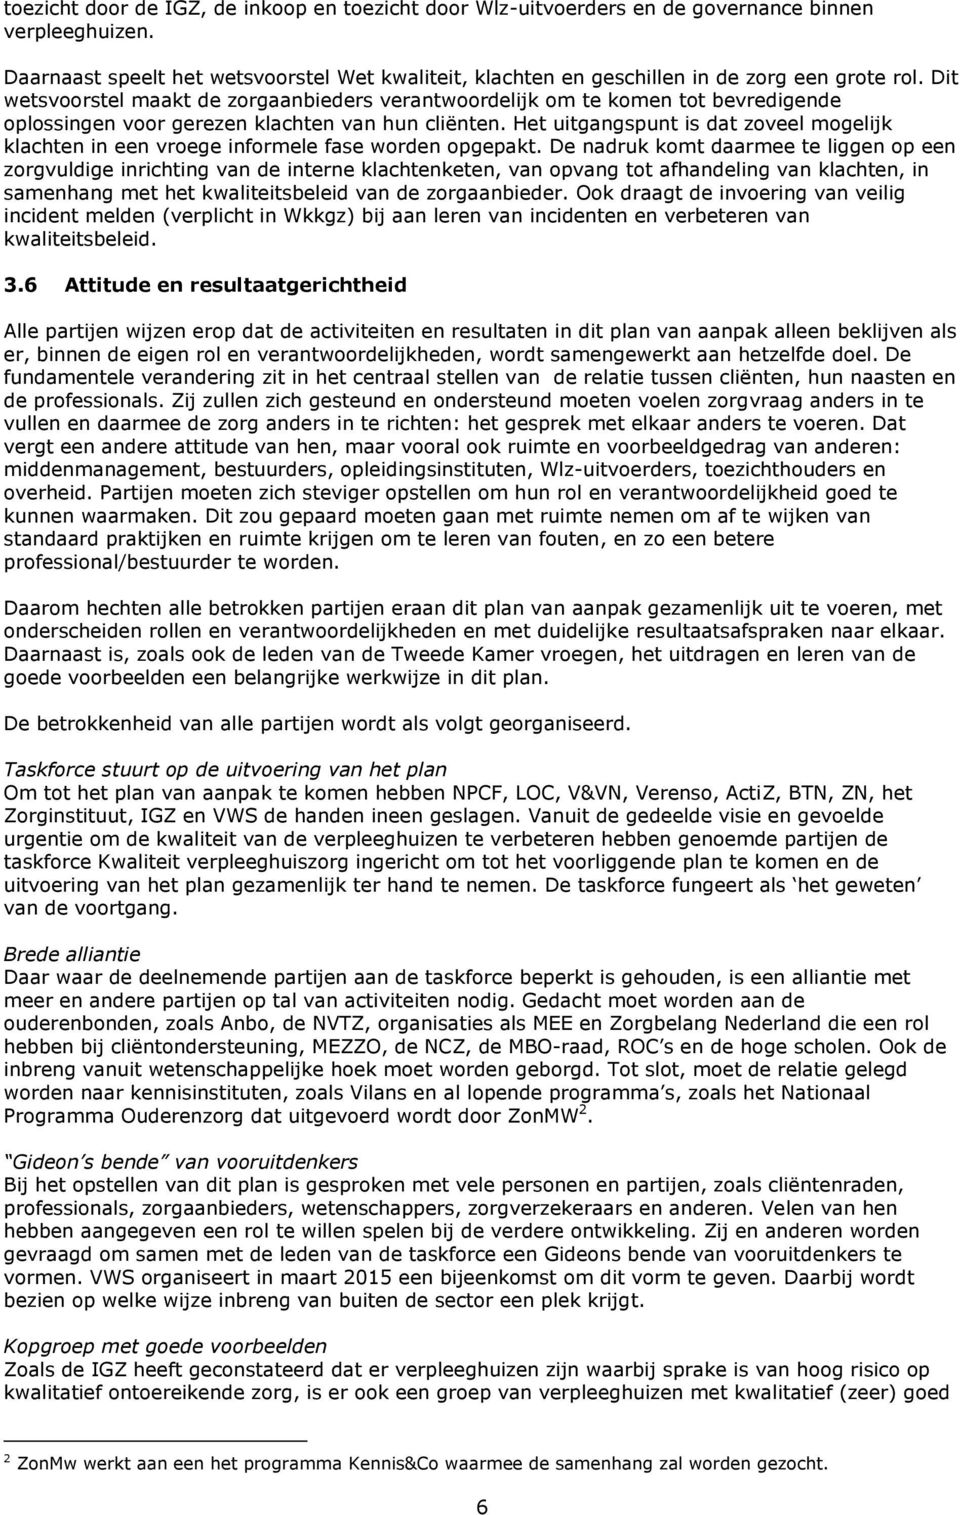 Dit wetsvoorstel maakt de zorgaanbieders verantwoordelijk om te komen tot bevredigende oplossingen voor gerezen klachten van hun cliënten.